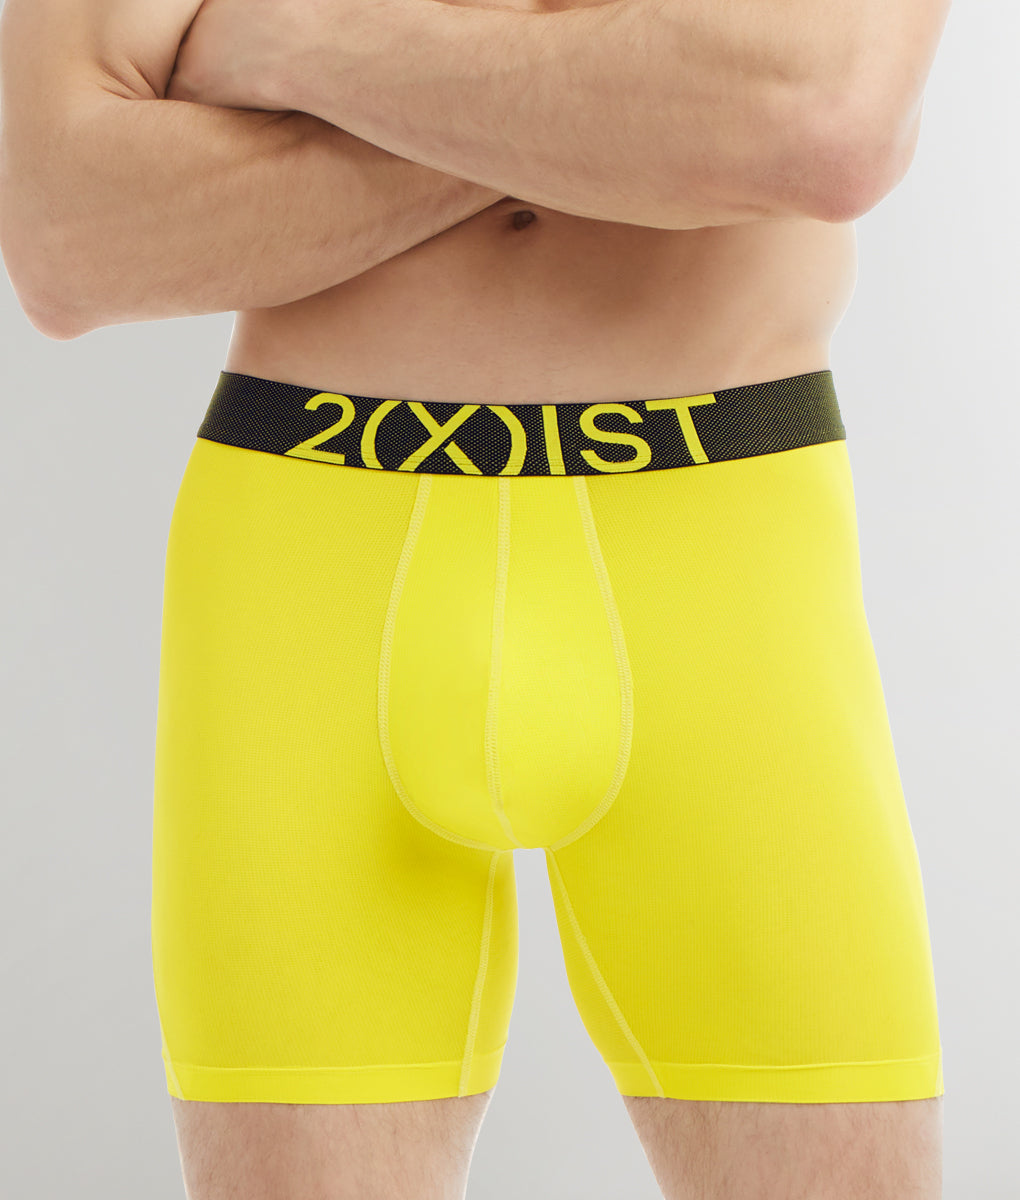 2(X)IST Performance Boxer Brief - Underwear Expert